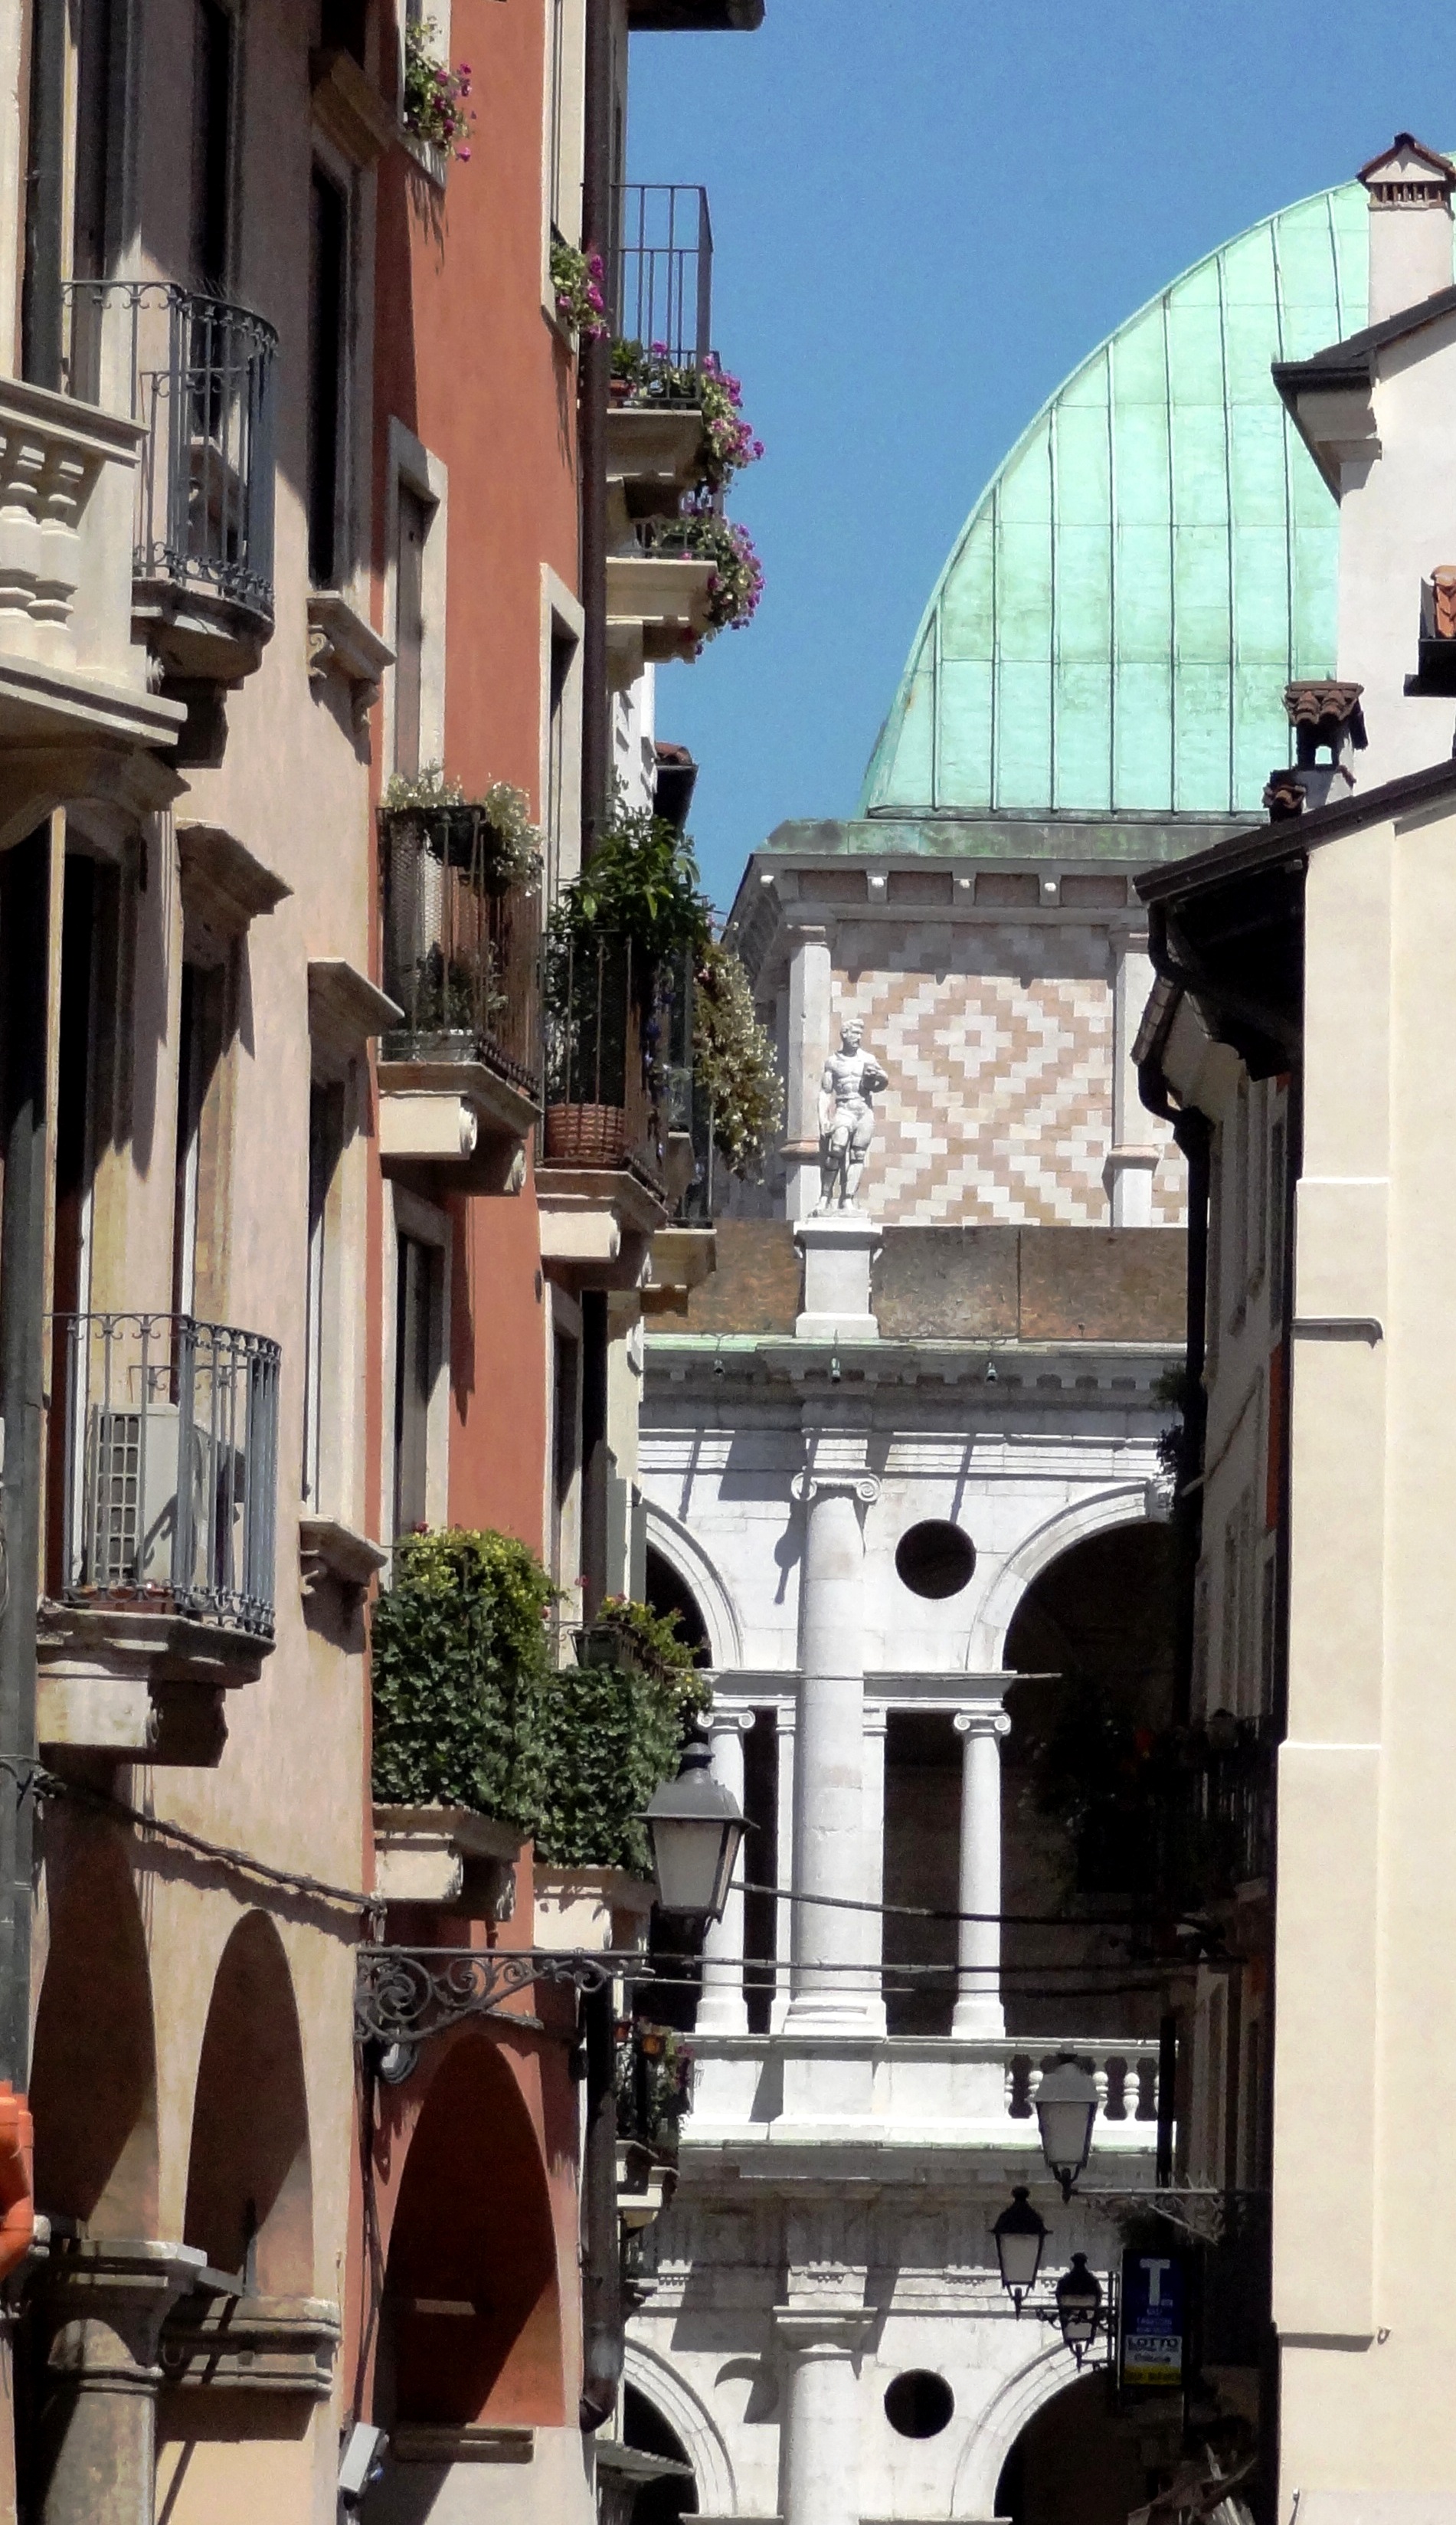 Vicenza, centro storico,veneto,location,cineturismo